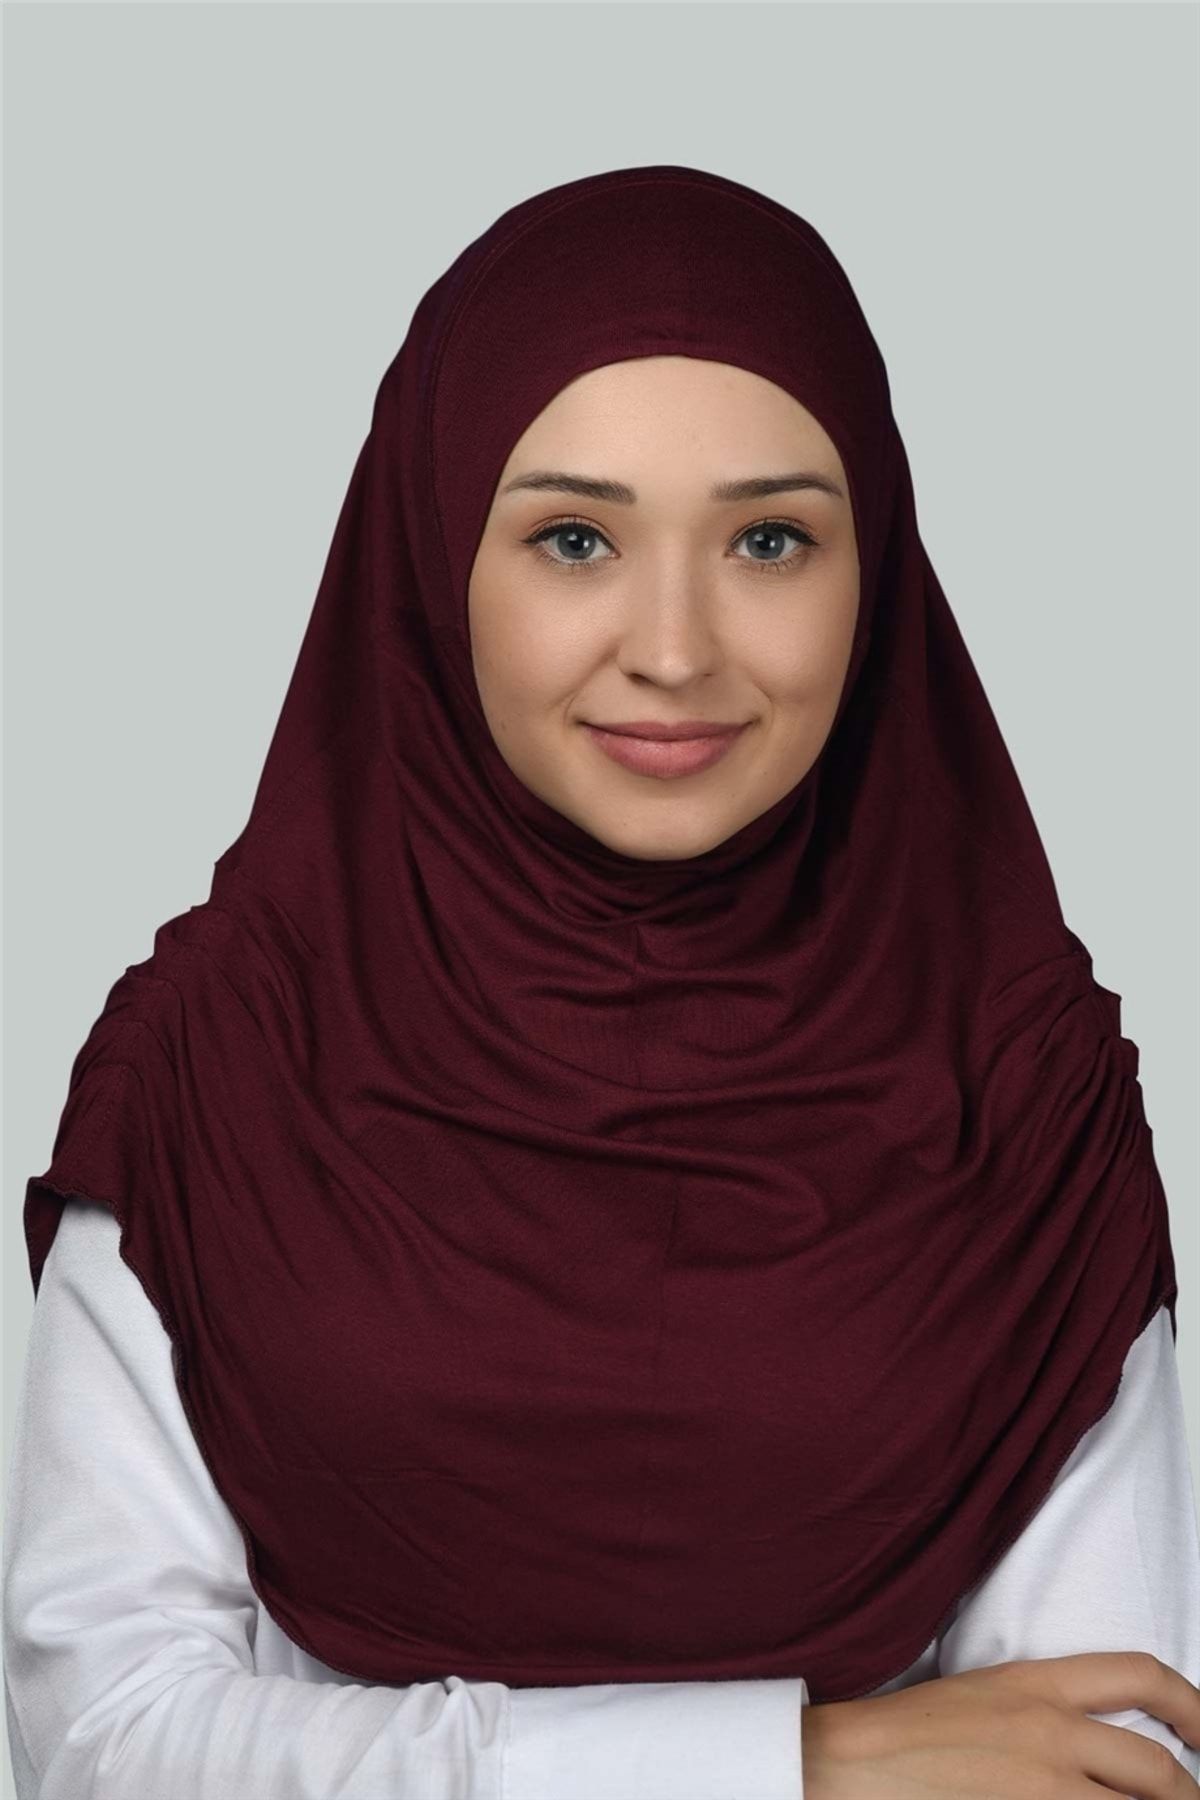 Altobeh Hazır Türban Büzgülü Pileli Pratik Eşarp Tesettür Hijab - Namaz Örtüsü - Bordo